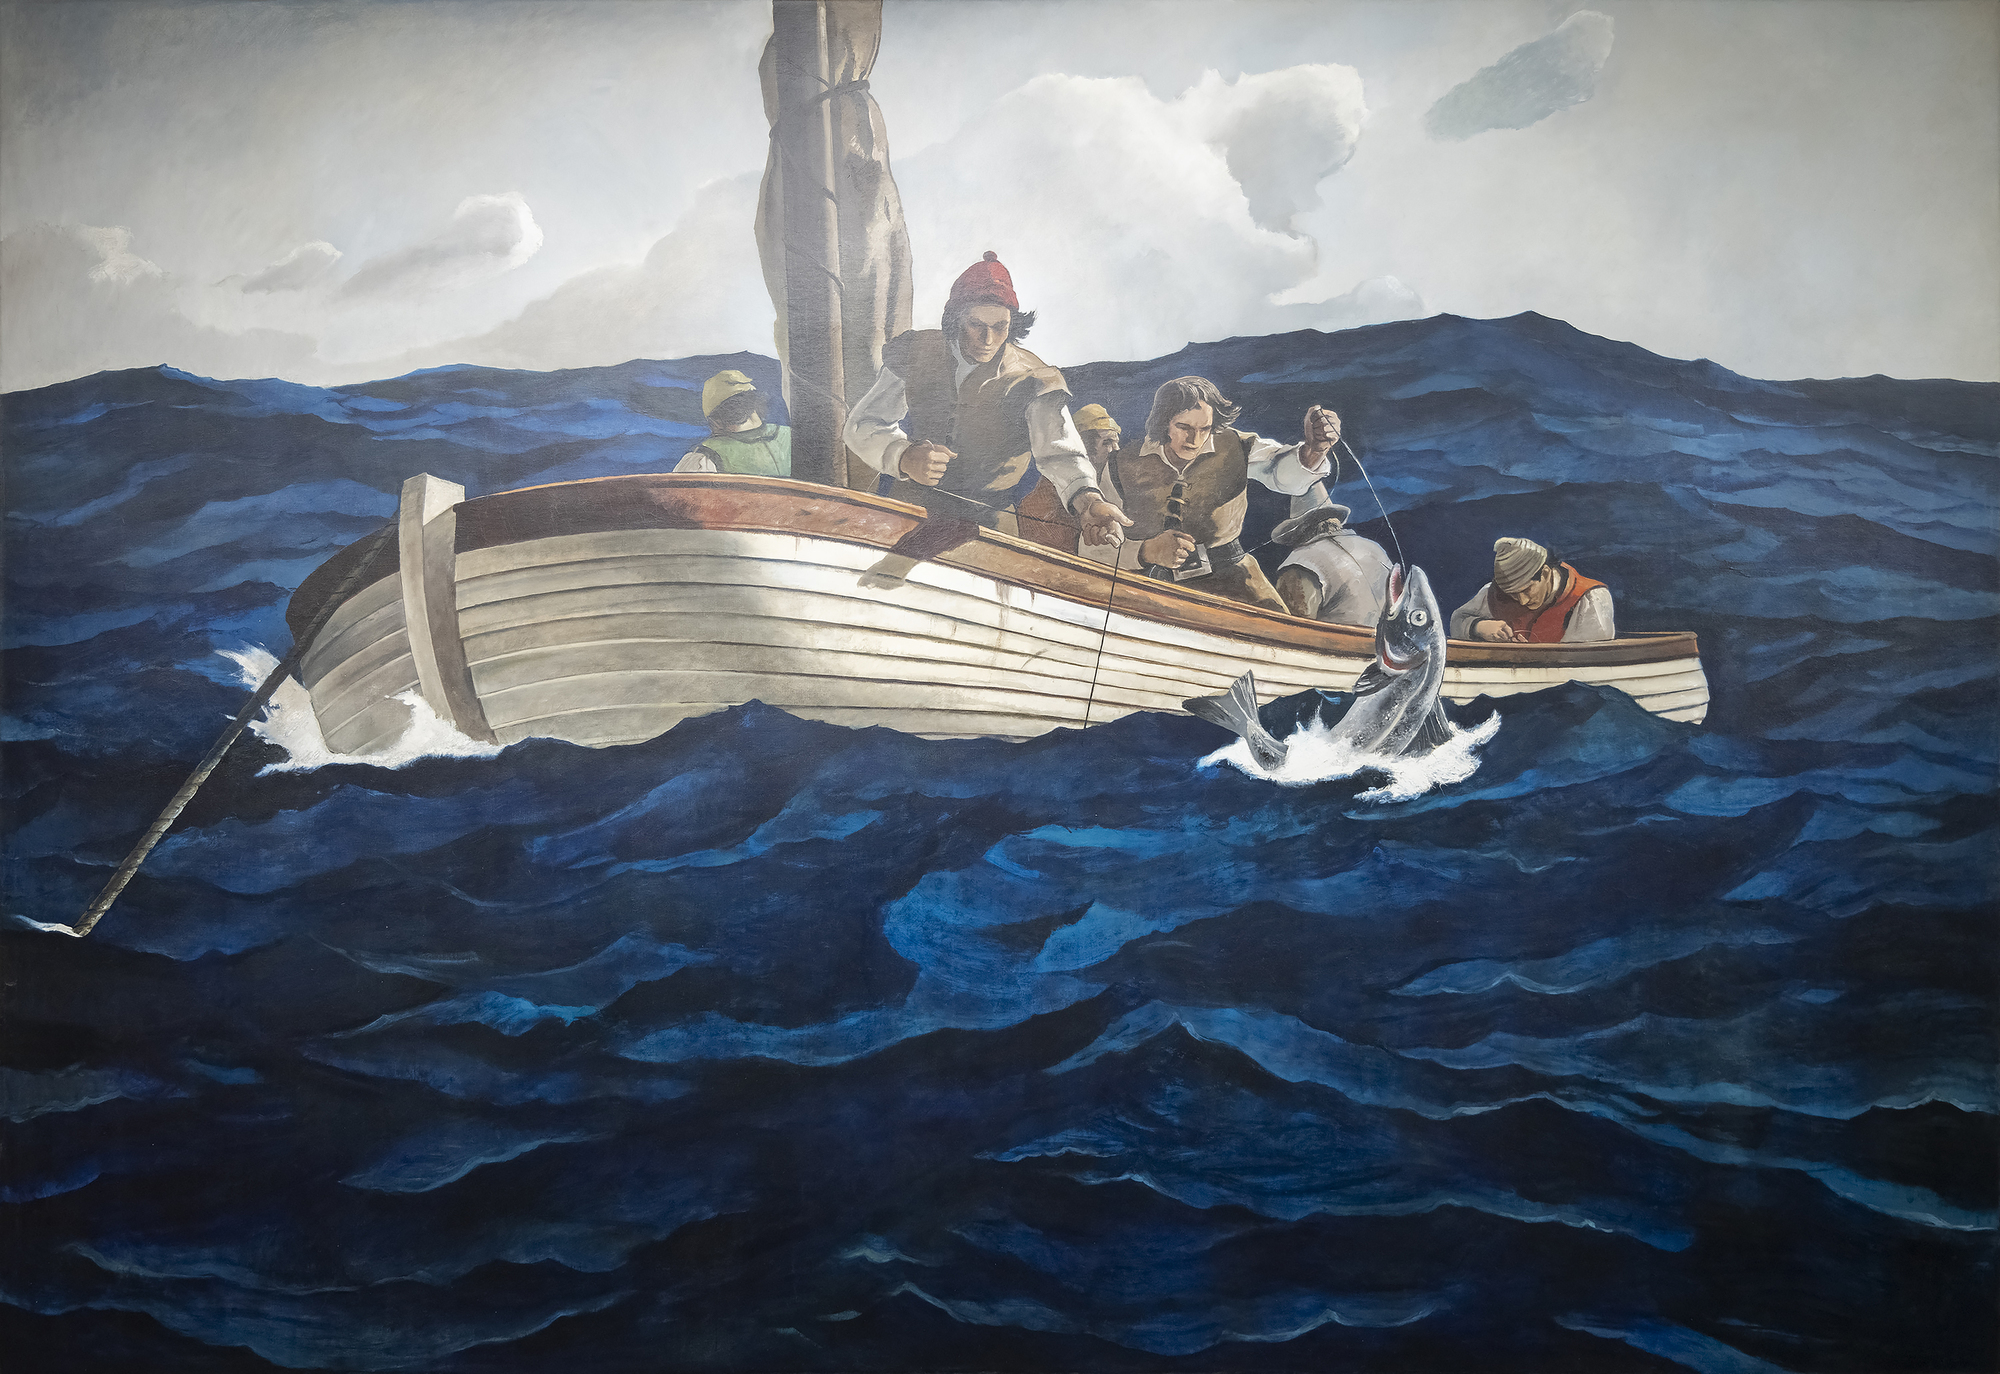 وفقا لسبب الكتالوج الذي جمعه متحف نهر برانديواين للفنون ، تم الانتهاء من الرسم الأولي لصيادي سمك القد البيوريتاني بواسطة N. C Wyeth قبل وفاته في أكتوبر 1945. يسجل الإدخال صورة للرسم بالإضافة إلى نقوش الفنان وعنوانه ، Puritan Cod Fishers ، الذي يصفه الكتالوج بأنه "بديل". في كلتا الحالتين ، فإن اللوحة القماشية واسعة النطاق هي عمل فريد من نوعه تذكر أندرو وايث لاحقا أنه تم رسمه بيده فقط ، وهو تعاون محدد لتصميم الأب وتكوينه أتى ثماره من خلال إعدام ابن رائع. بالنسبة لأندرو ، لا بد أنها كانت تجربة عاطفية وشعورية عميقة. نظرا لاهتمام والده بالتفاصيل والأصالة ، فإن خطوط المراكب الشراعية الصغيرة تمثل الكراث المستخدم خلال القرن السادس عشر. من ناحية أخرى ، من المحتمل أن يكون أندرو قد عمق ألوان البحر المضطرب أكثر مما قد يكون لدى والده ، وهو خيار يزيد بشكل مناسب من الطبيعة المحفوفة بالمخاطر للمهمة.